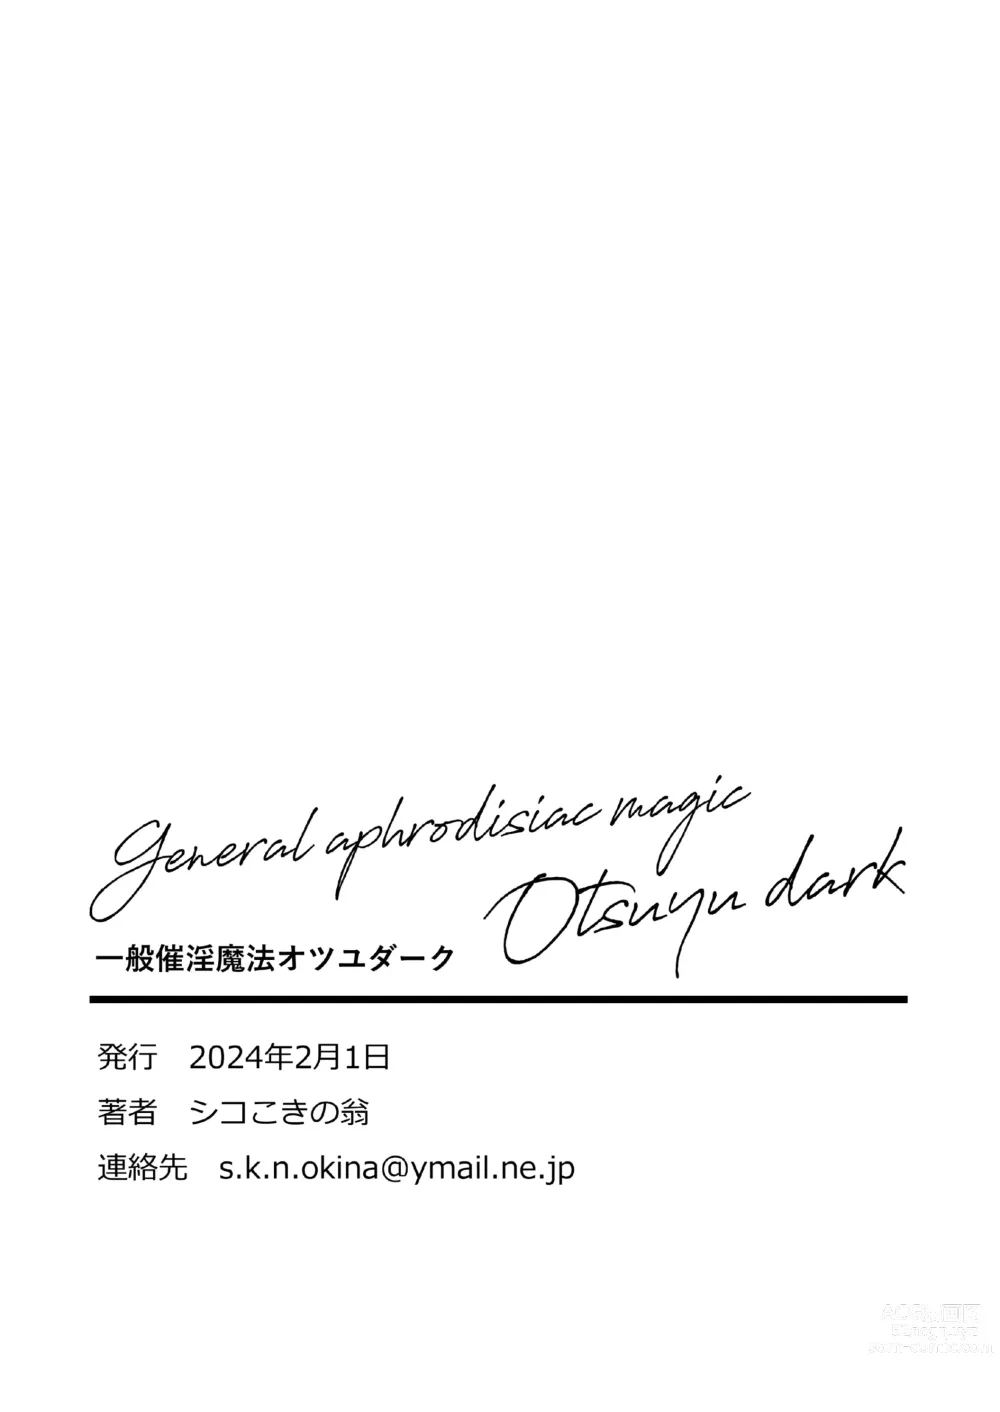 Page 27 of doujinshi Ippan Saiin Mahou Otsuyu Dark - General aphrodisiac magic Otsuyu dark